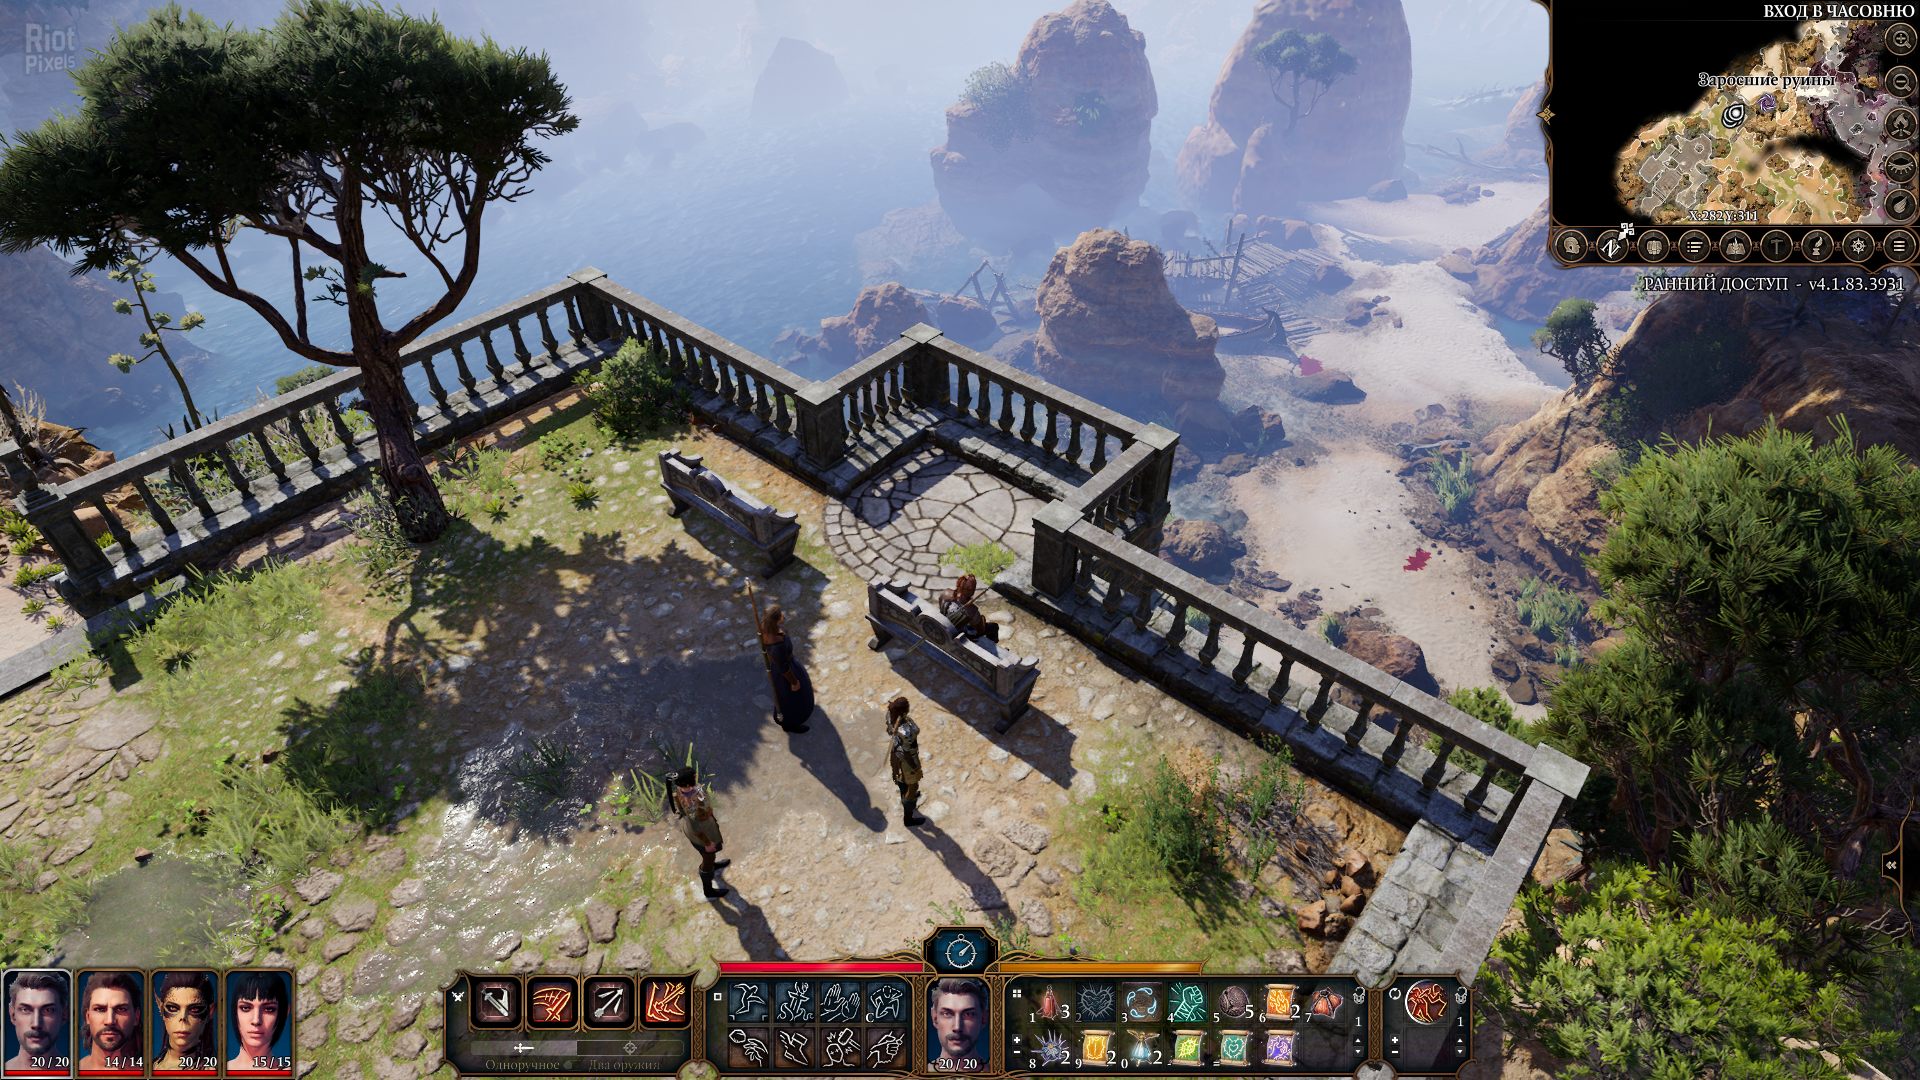 Baldur's Gate 3 - game screenshots at Riot Pixels, images